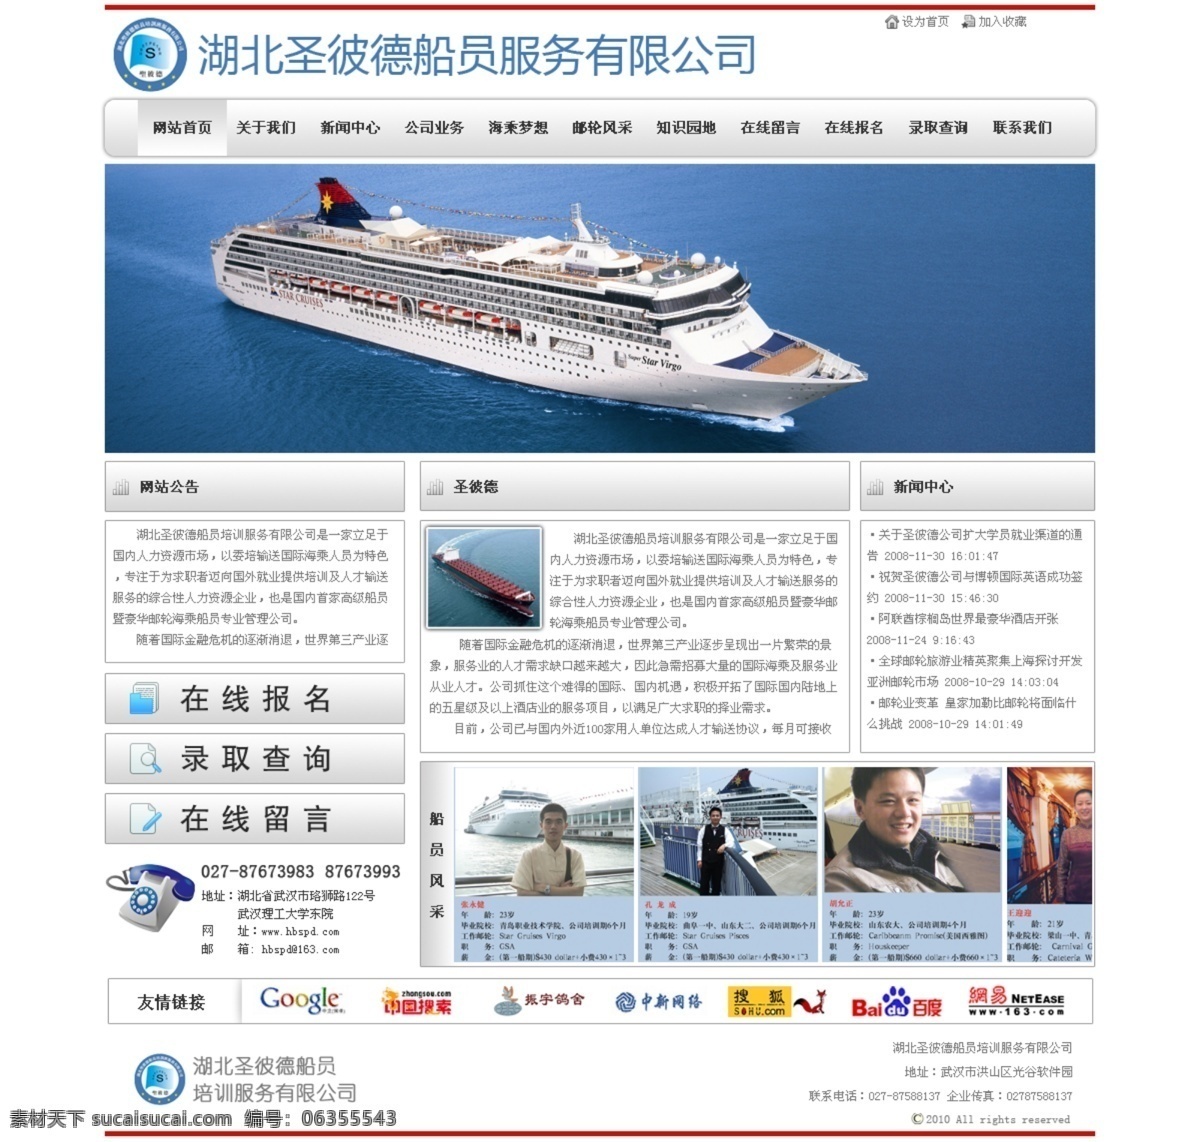 船员 网站首页 稿 海员 海乘 招生网站 中文模版 网页模板 源文件